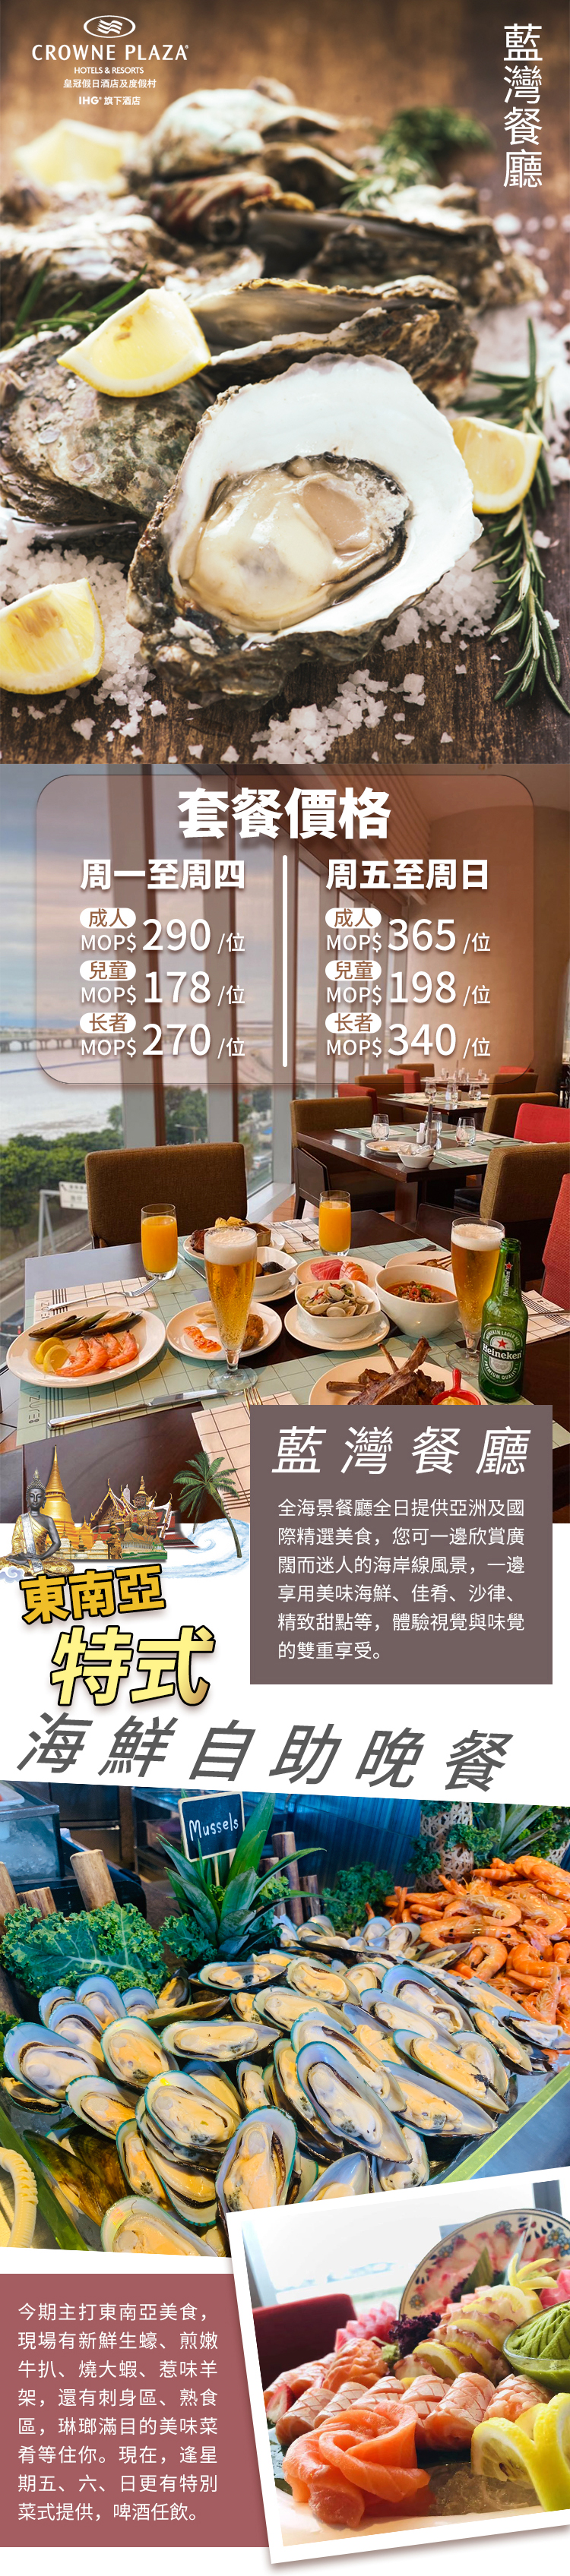 皇冠假日蓝湾餐厅详情页-繁体_02.jpg